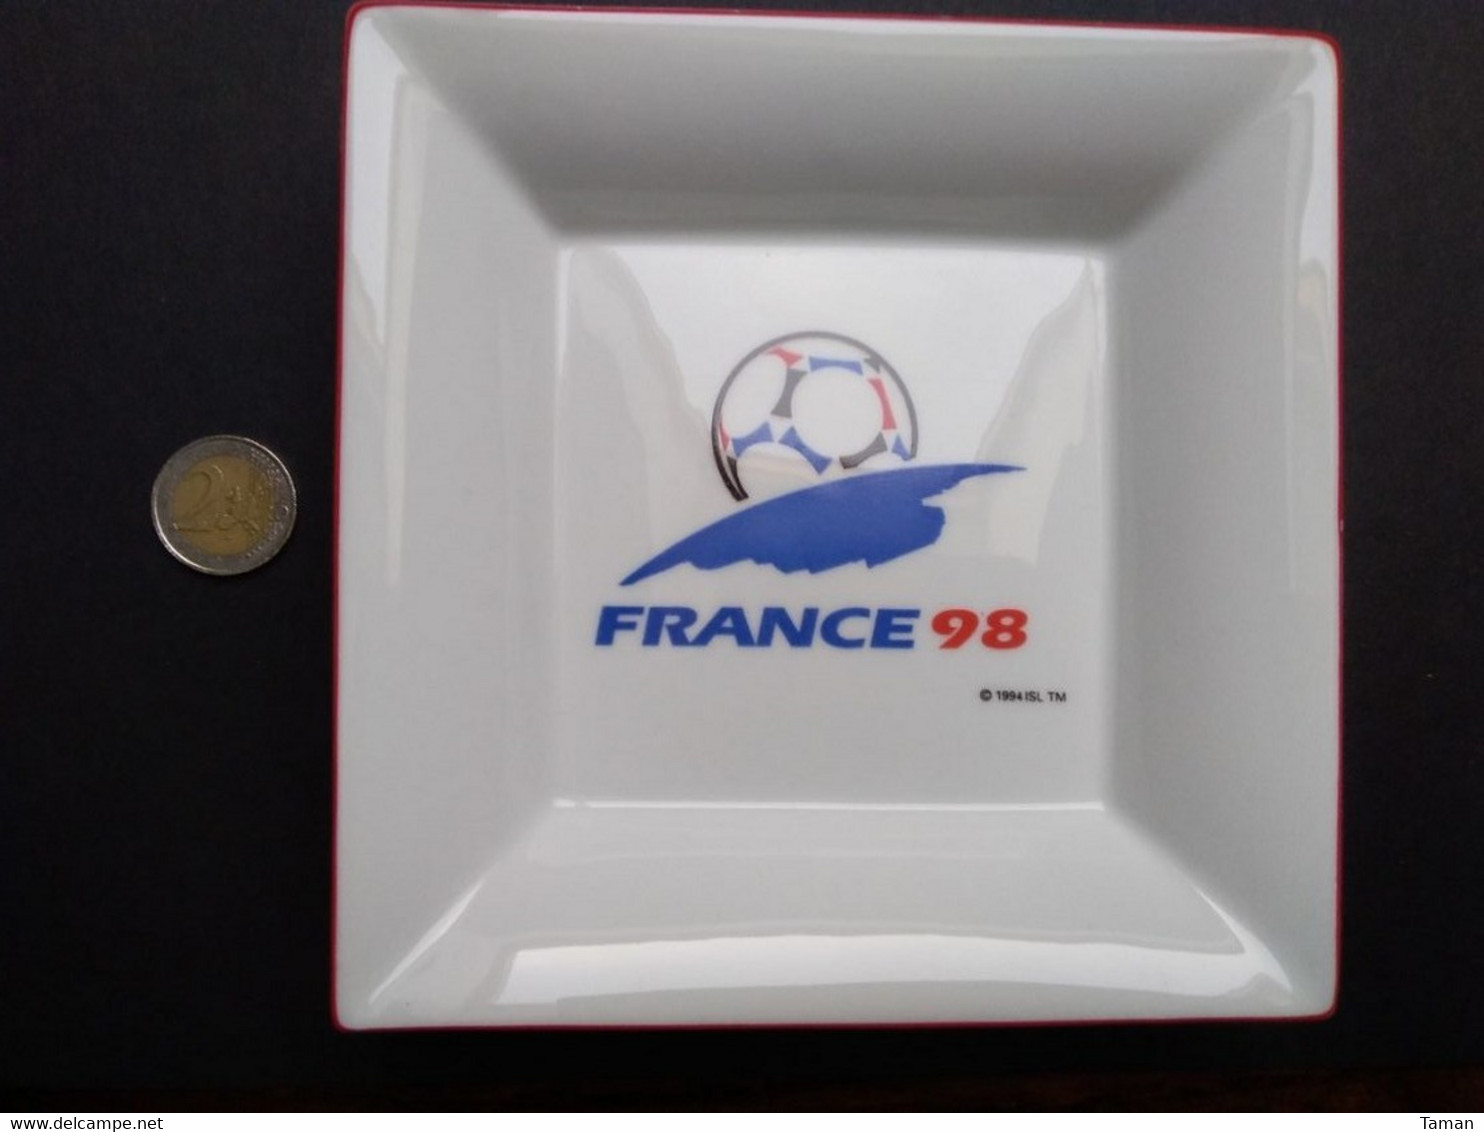 France 98  -  Coupe Du Monde De Foot-ball 1998  -  Cendrier - Porcelaine